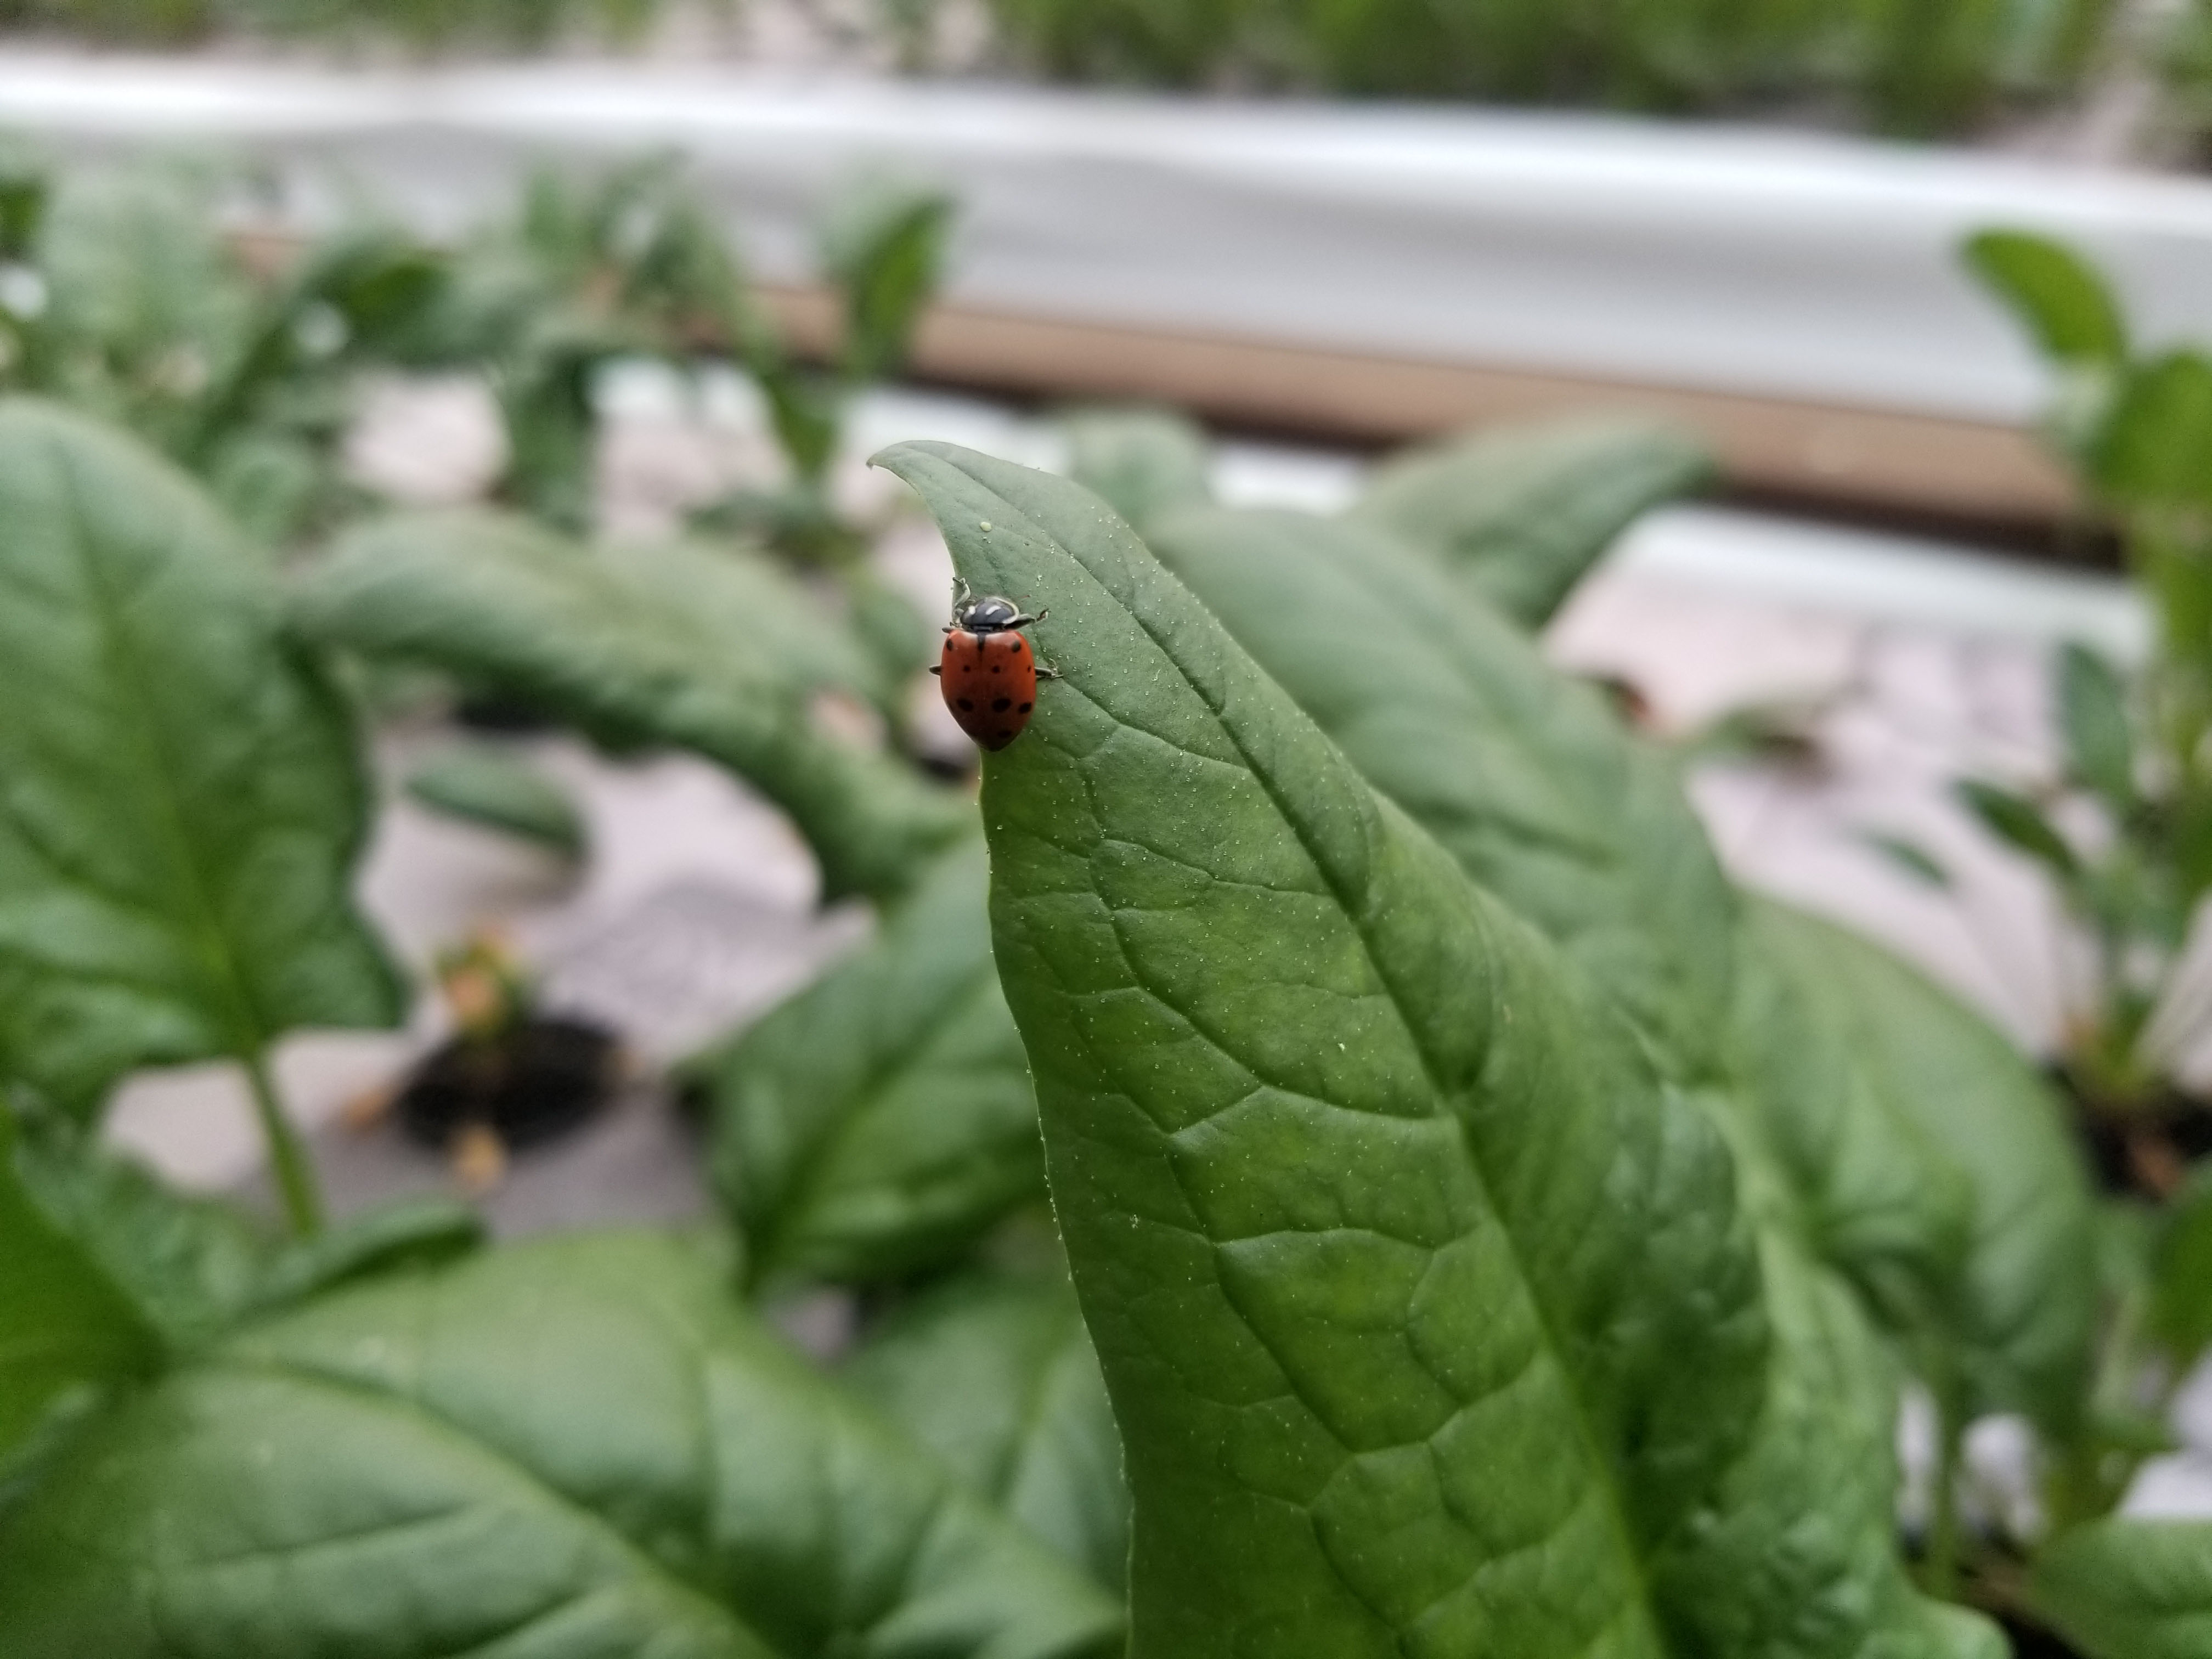 Ladybug on Lettuce leaf